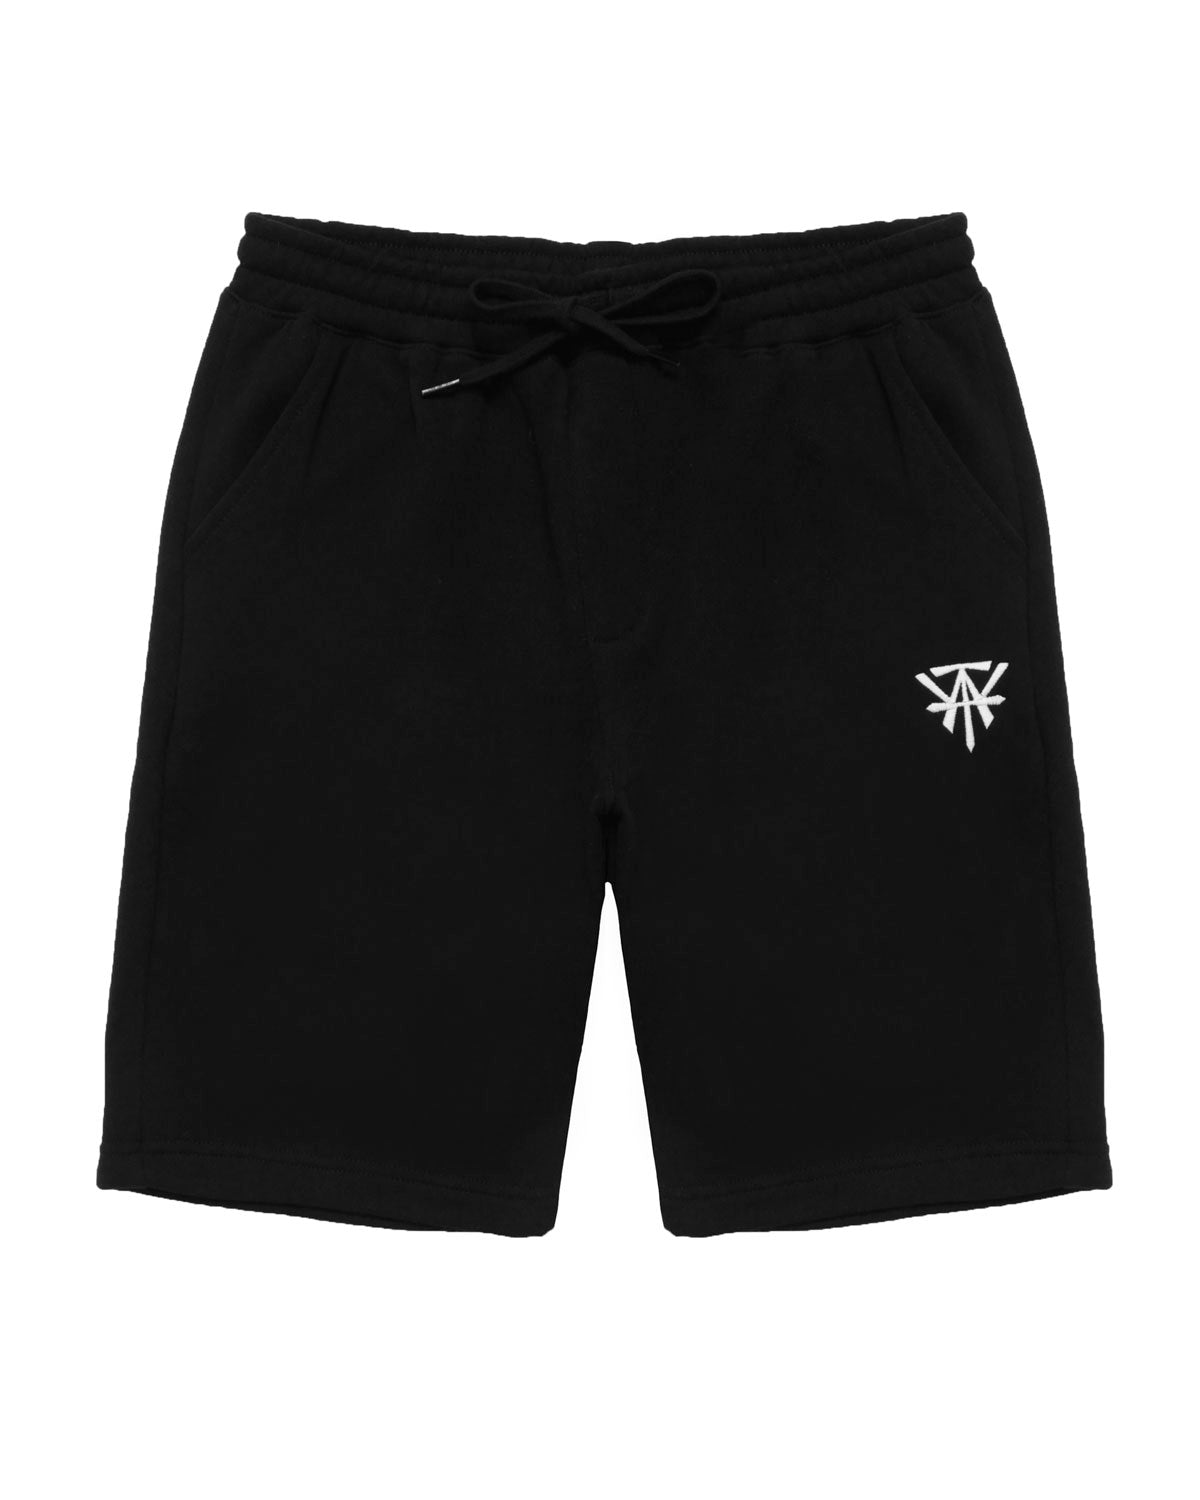 WATT Logo Fleece Shorts - Black